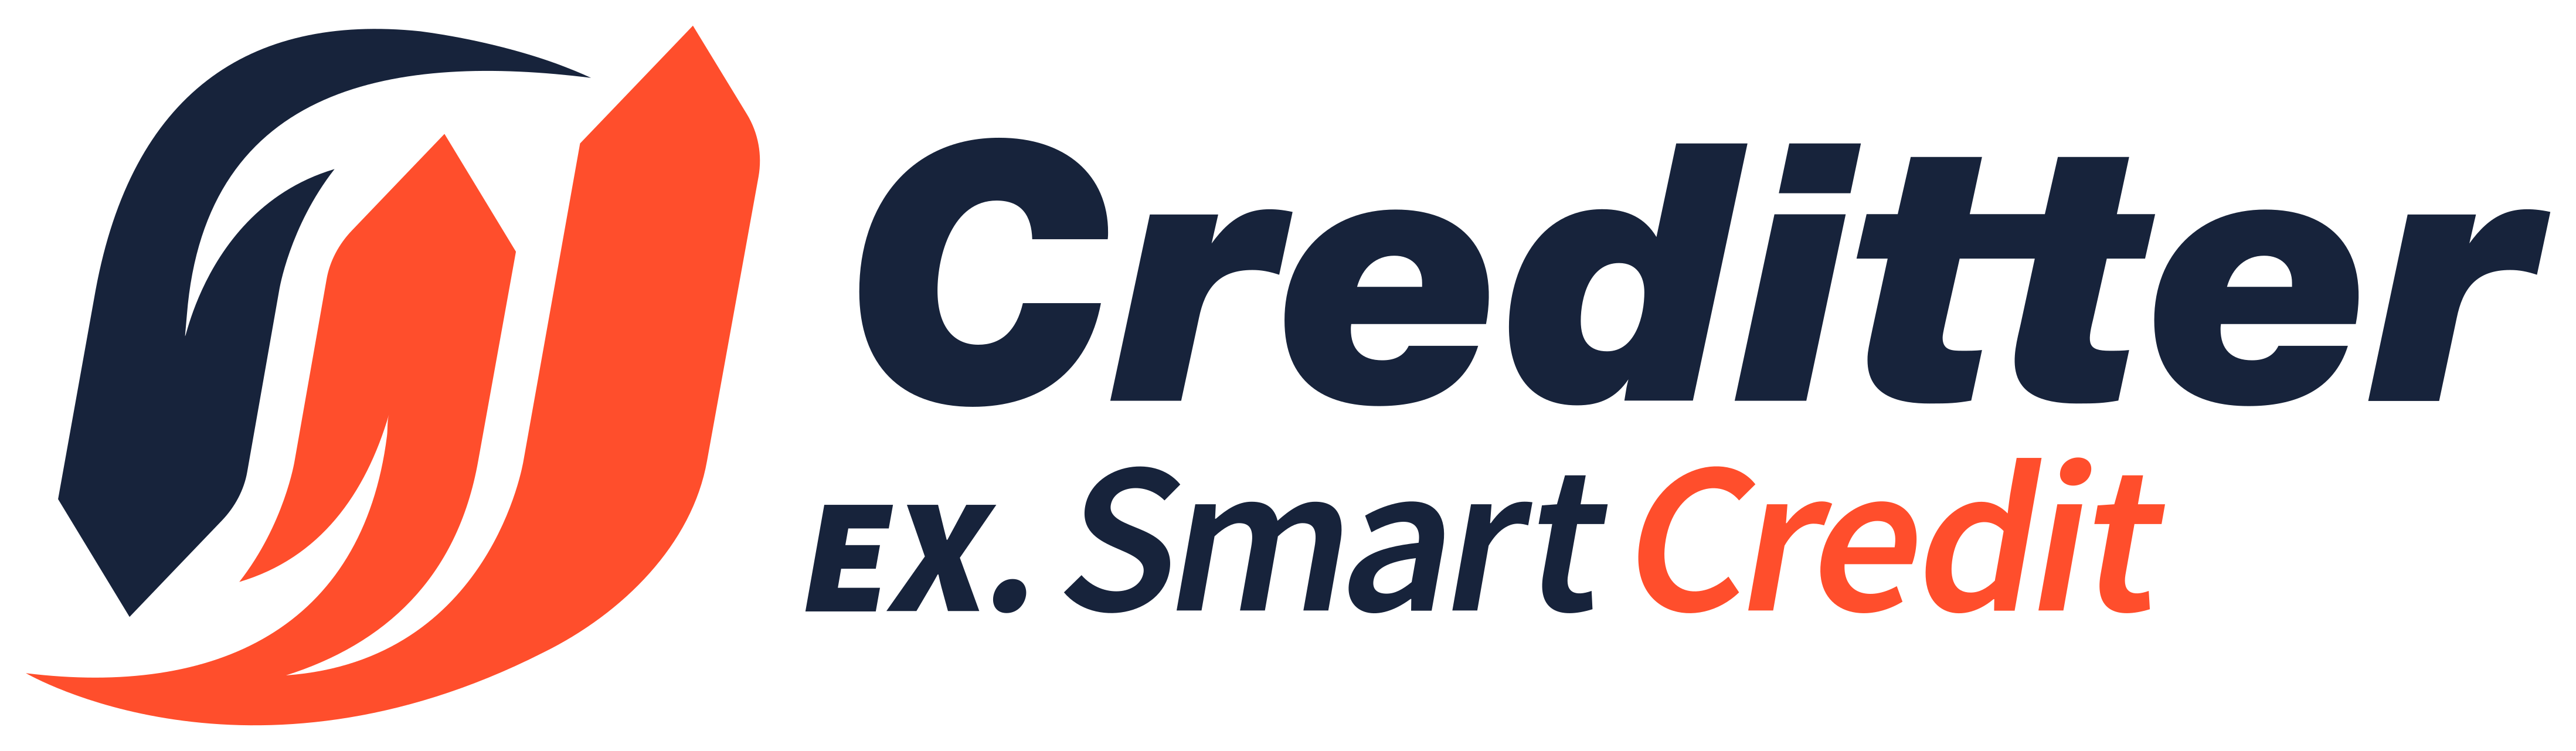 Creditter (Smartcredit) – личный кабинет: регистрация, вход по номеру телефона, восстановление, оплата займа